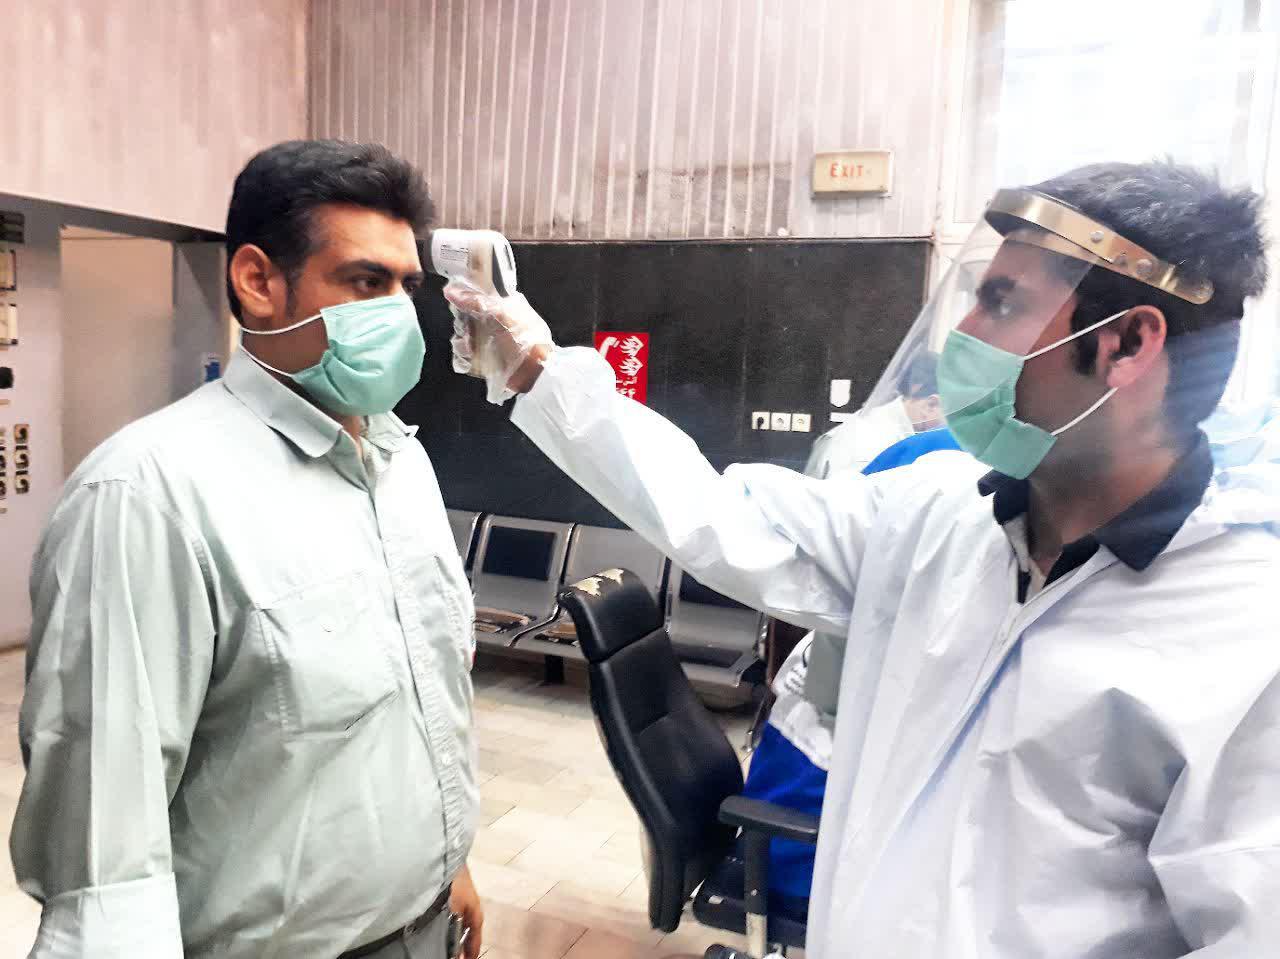 تشدید اقدامات بهداشتی مقابله با کروناویروس در نیروگاه رامین اهواز